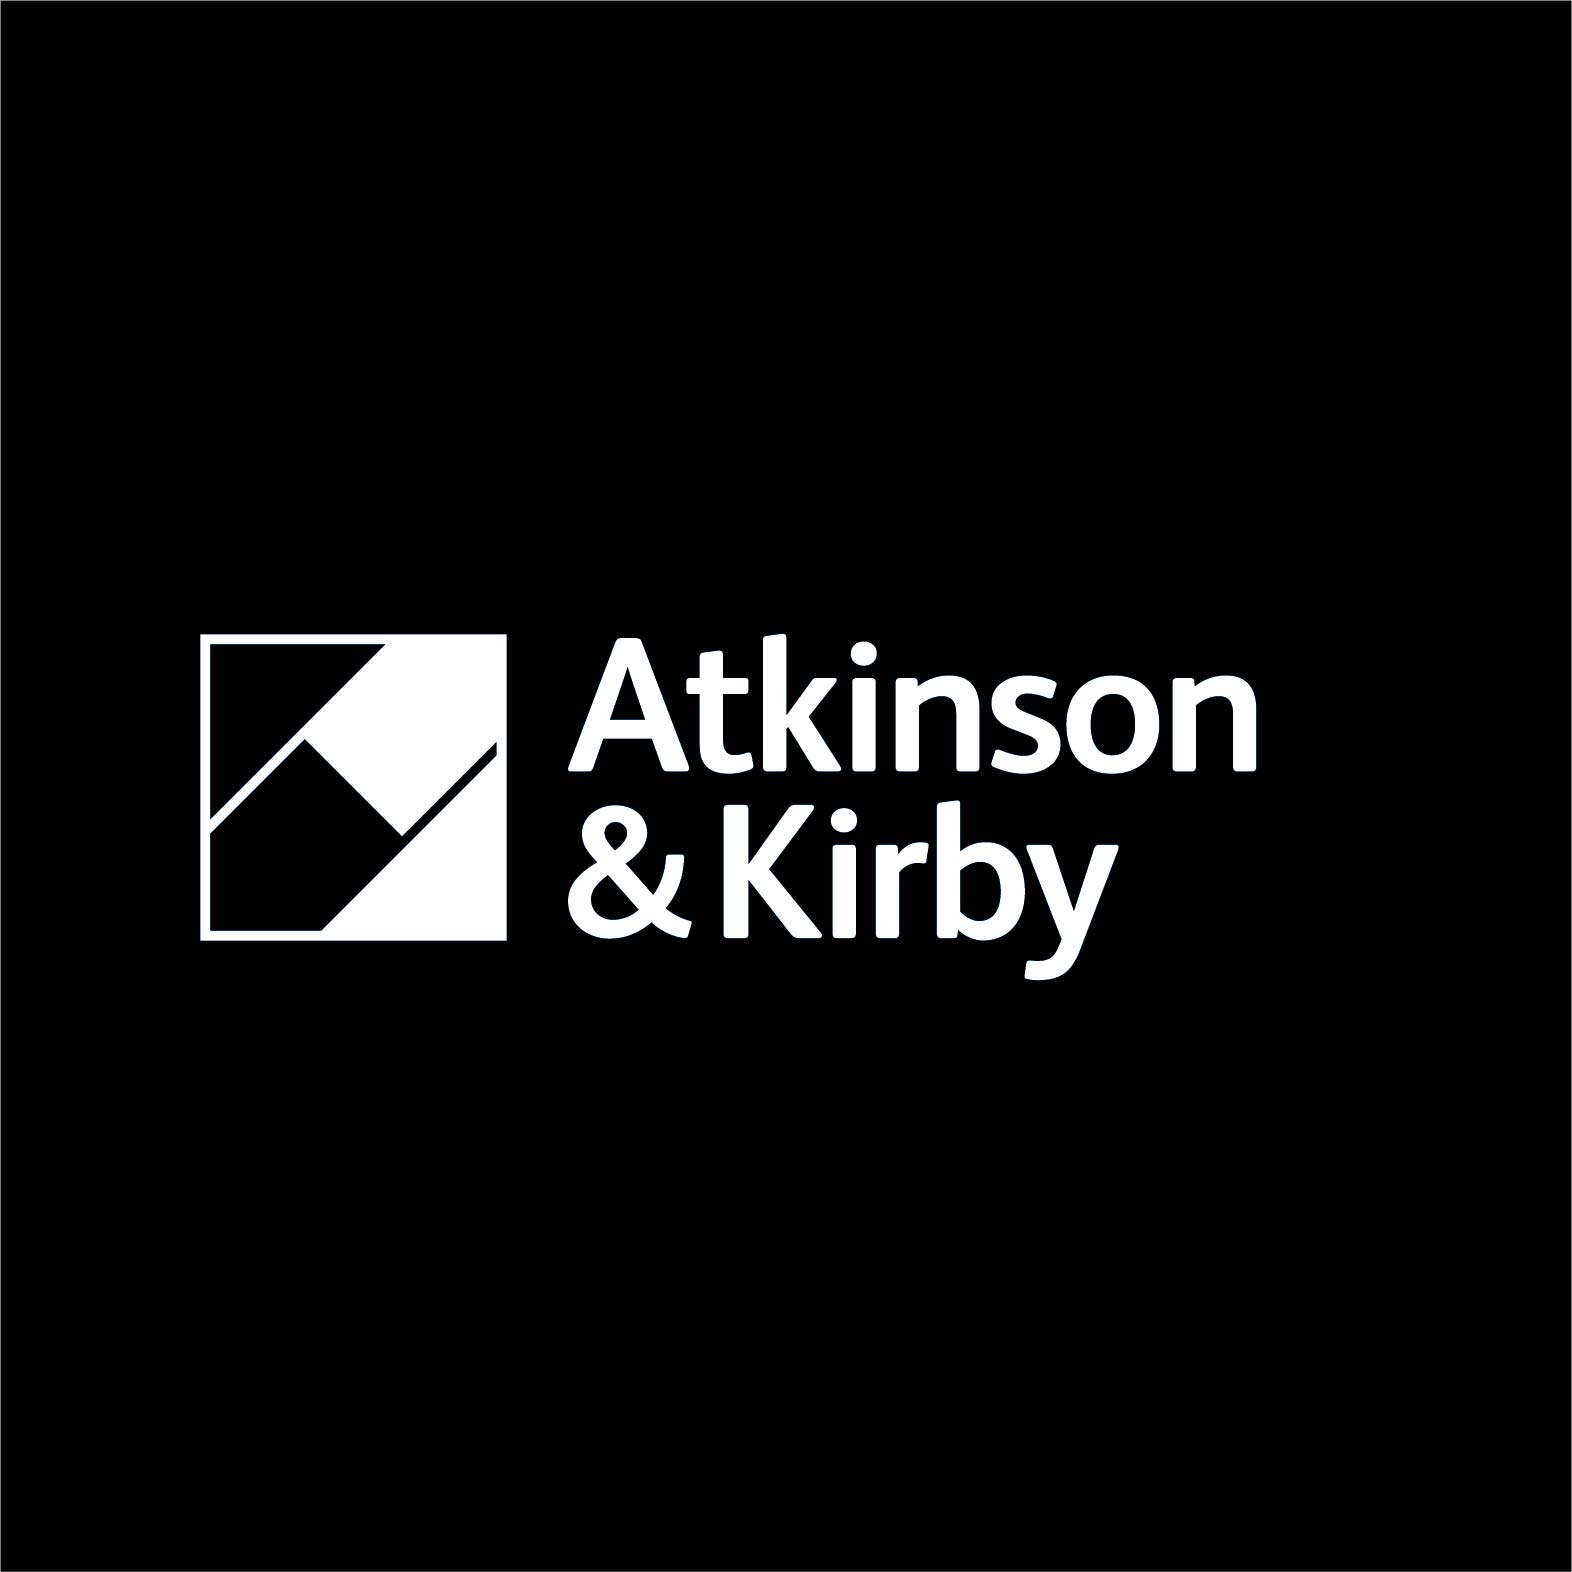 Atkinson & Kirby Ltd